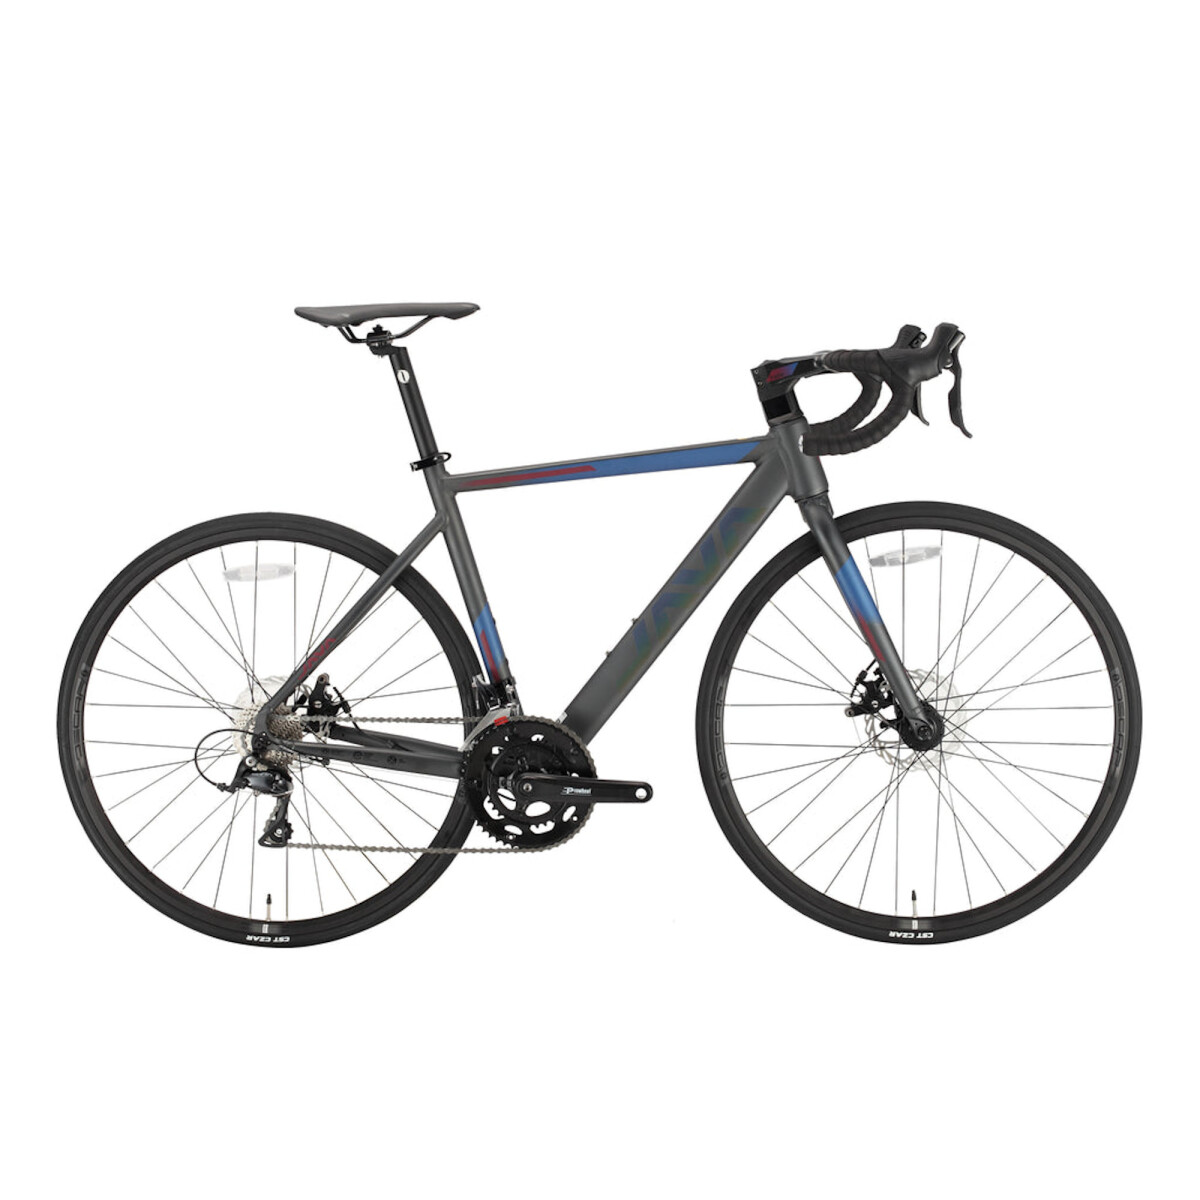 Java - Bicicleta de Ruta Ronda 700C- 18 Velocidades, Talle 45. Color: Titanium. - 001 